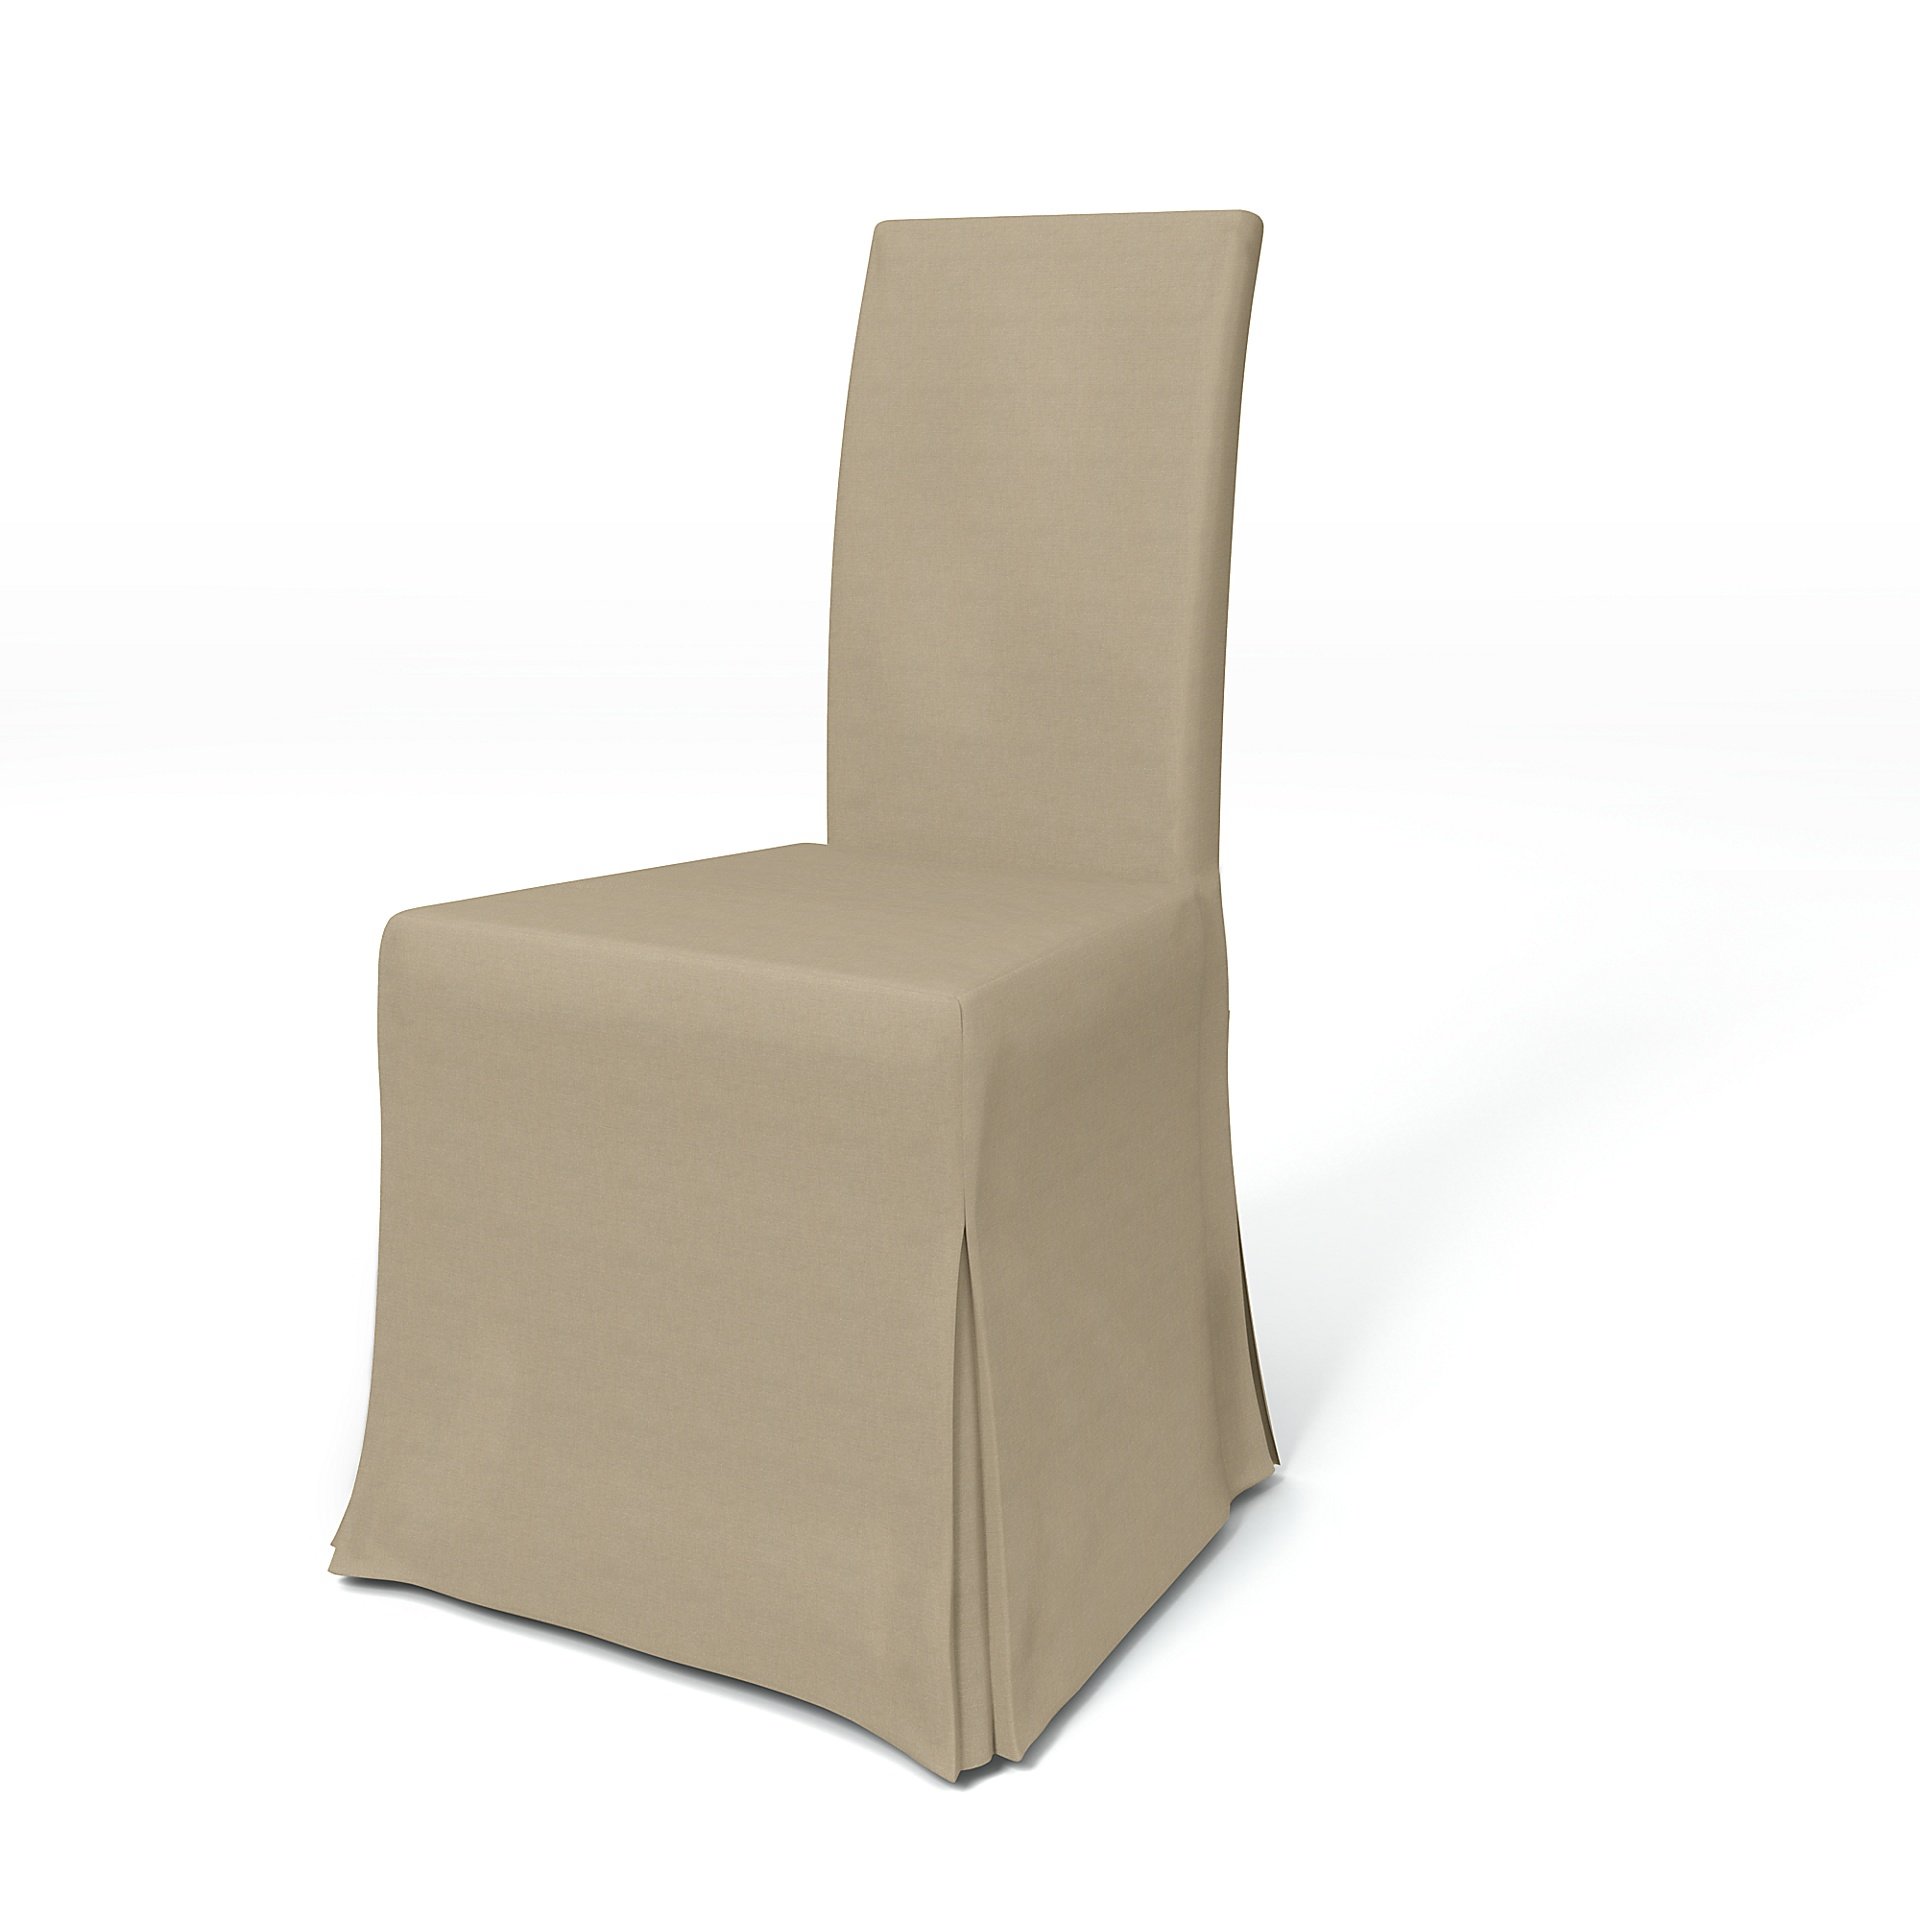 IKEA - Harry Dining Chair Cover, Tan, Linen - Bemz